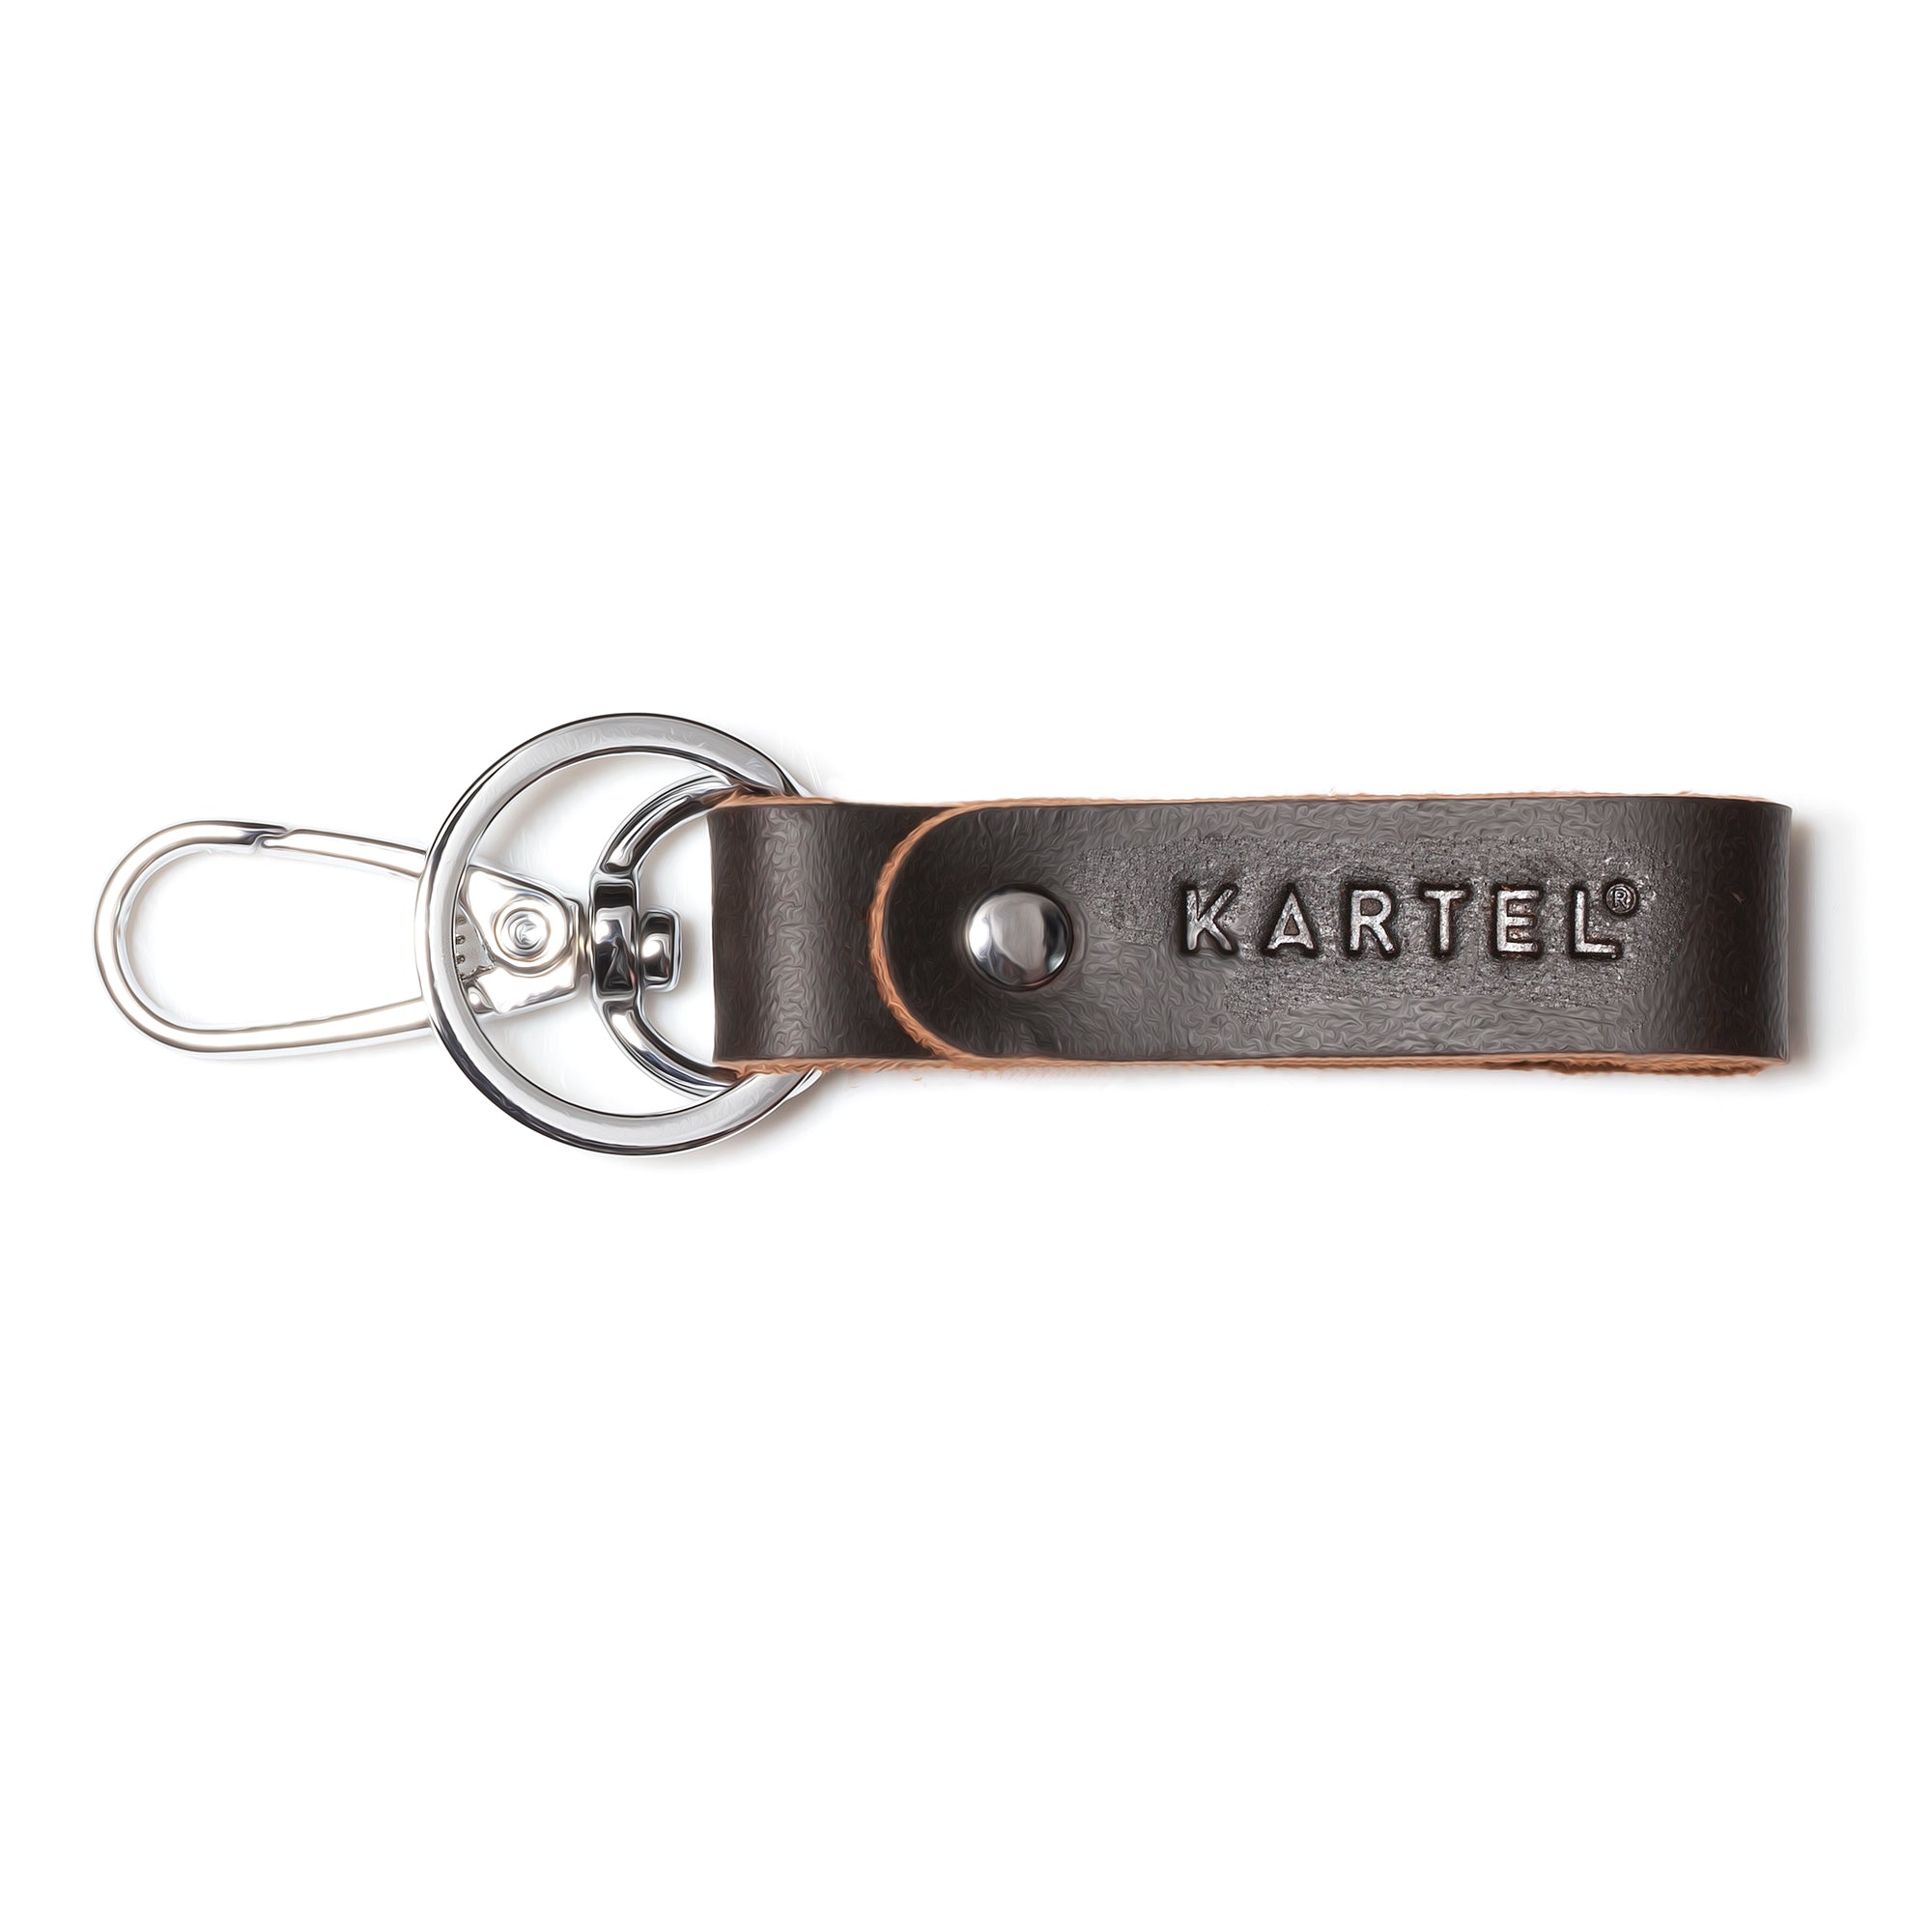 Kartel Key Ring - Leather loop Ring